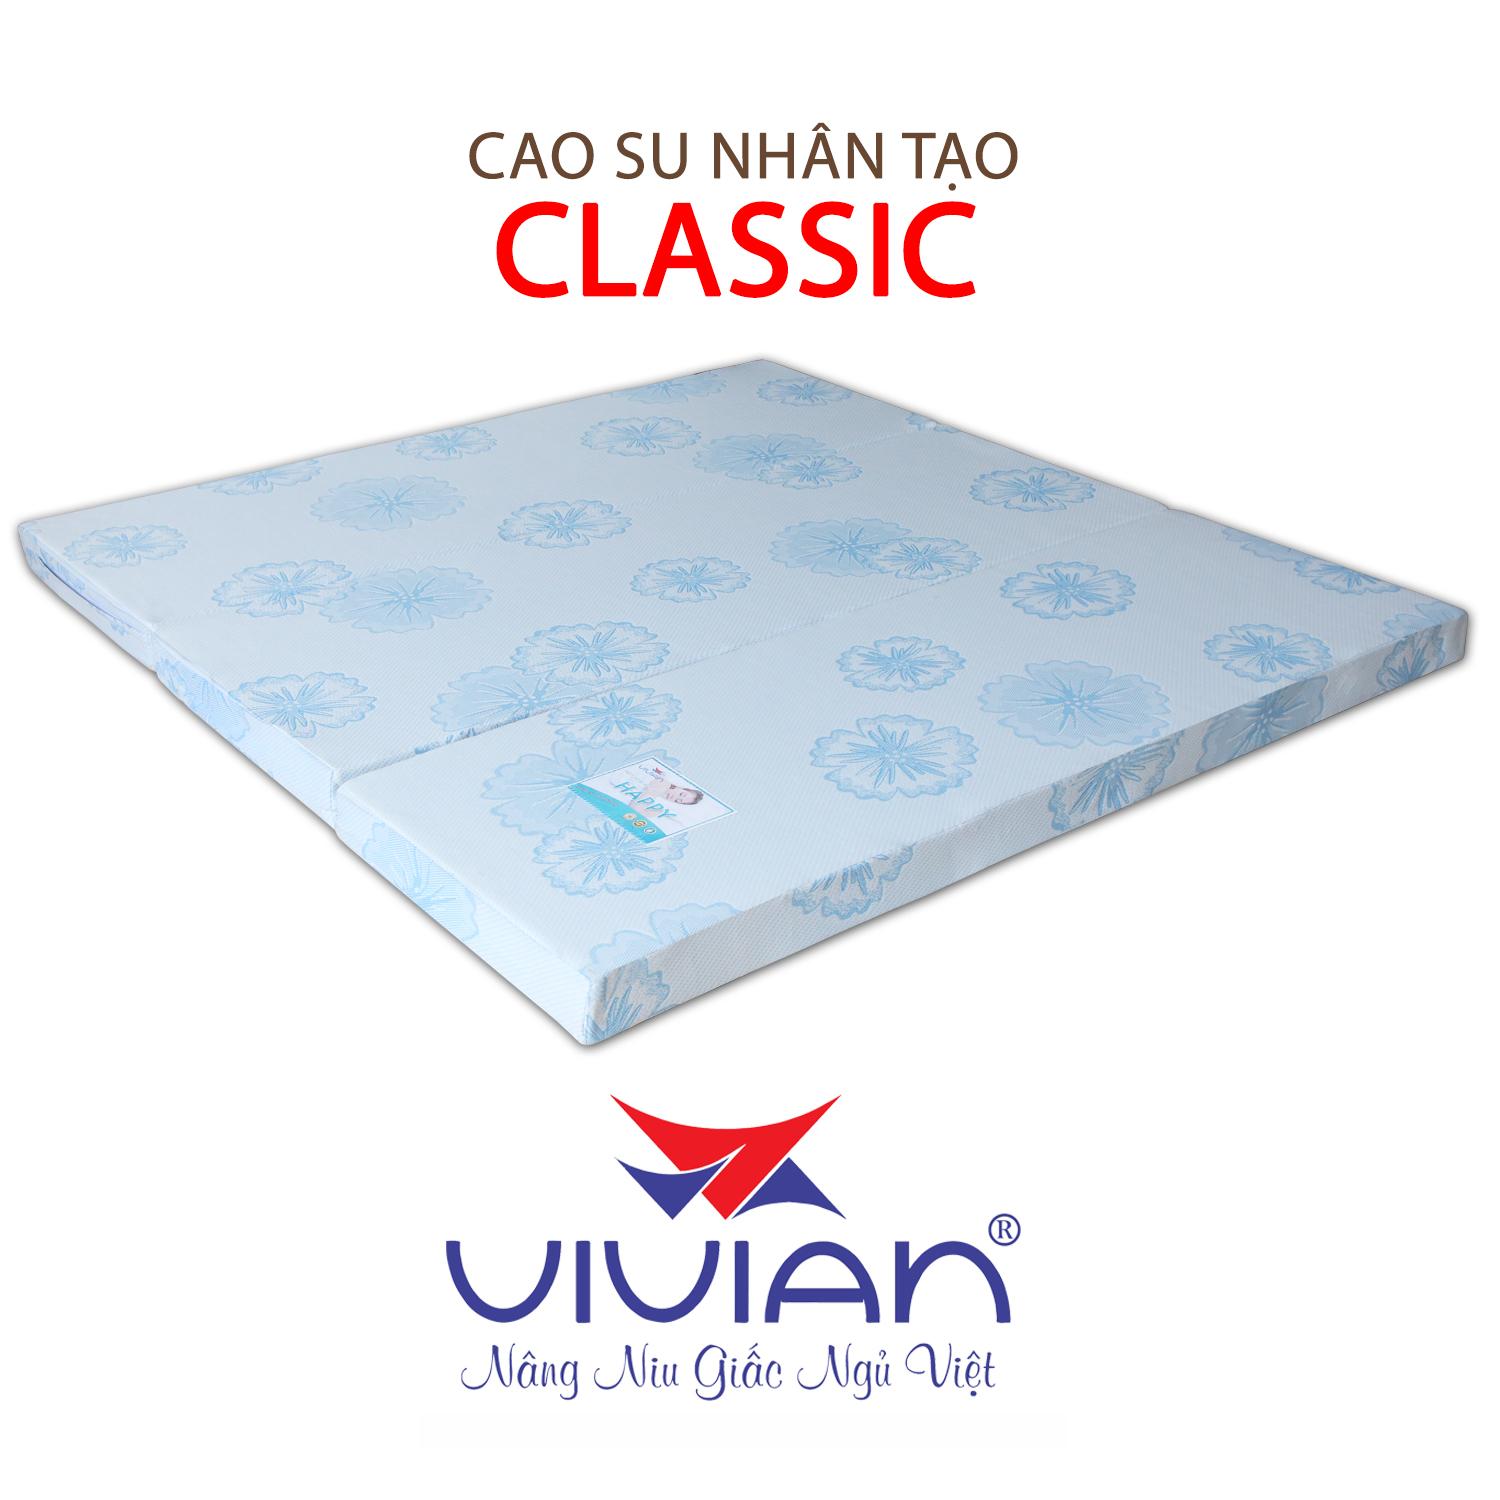 NỆM CAO SU NHÂN TẠO CLASSIC GẤP 3 VIVIAN 180X200X5